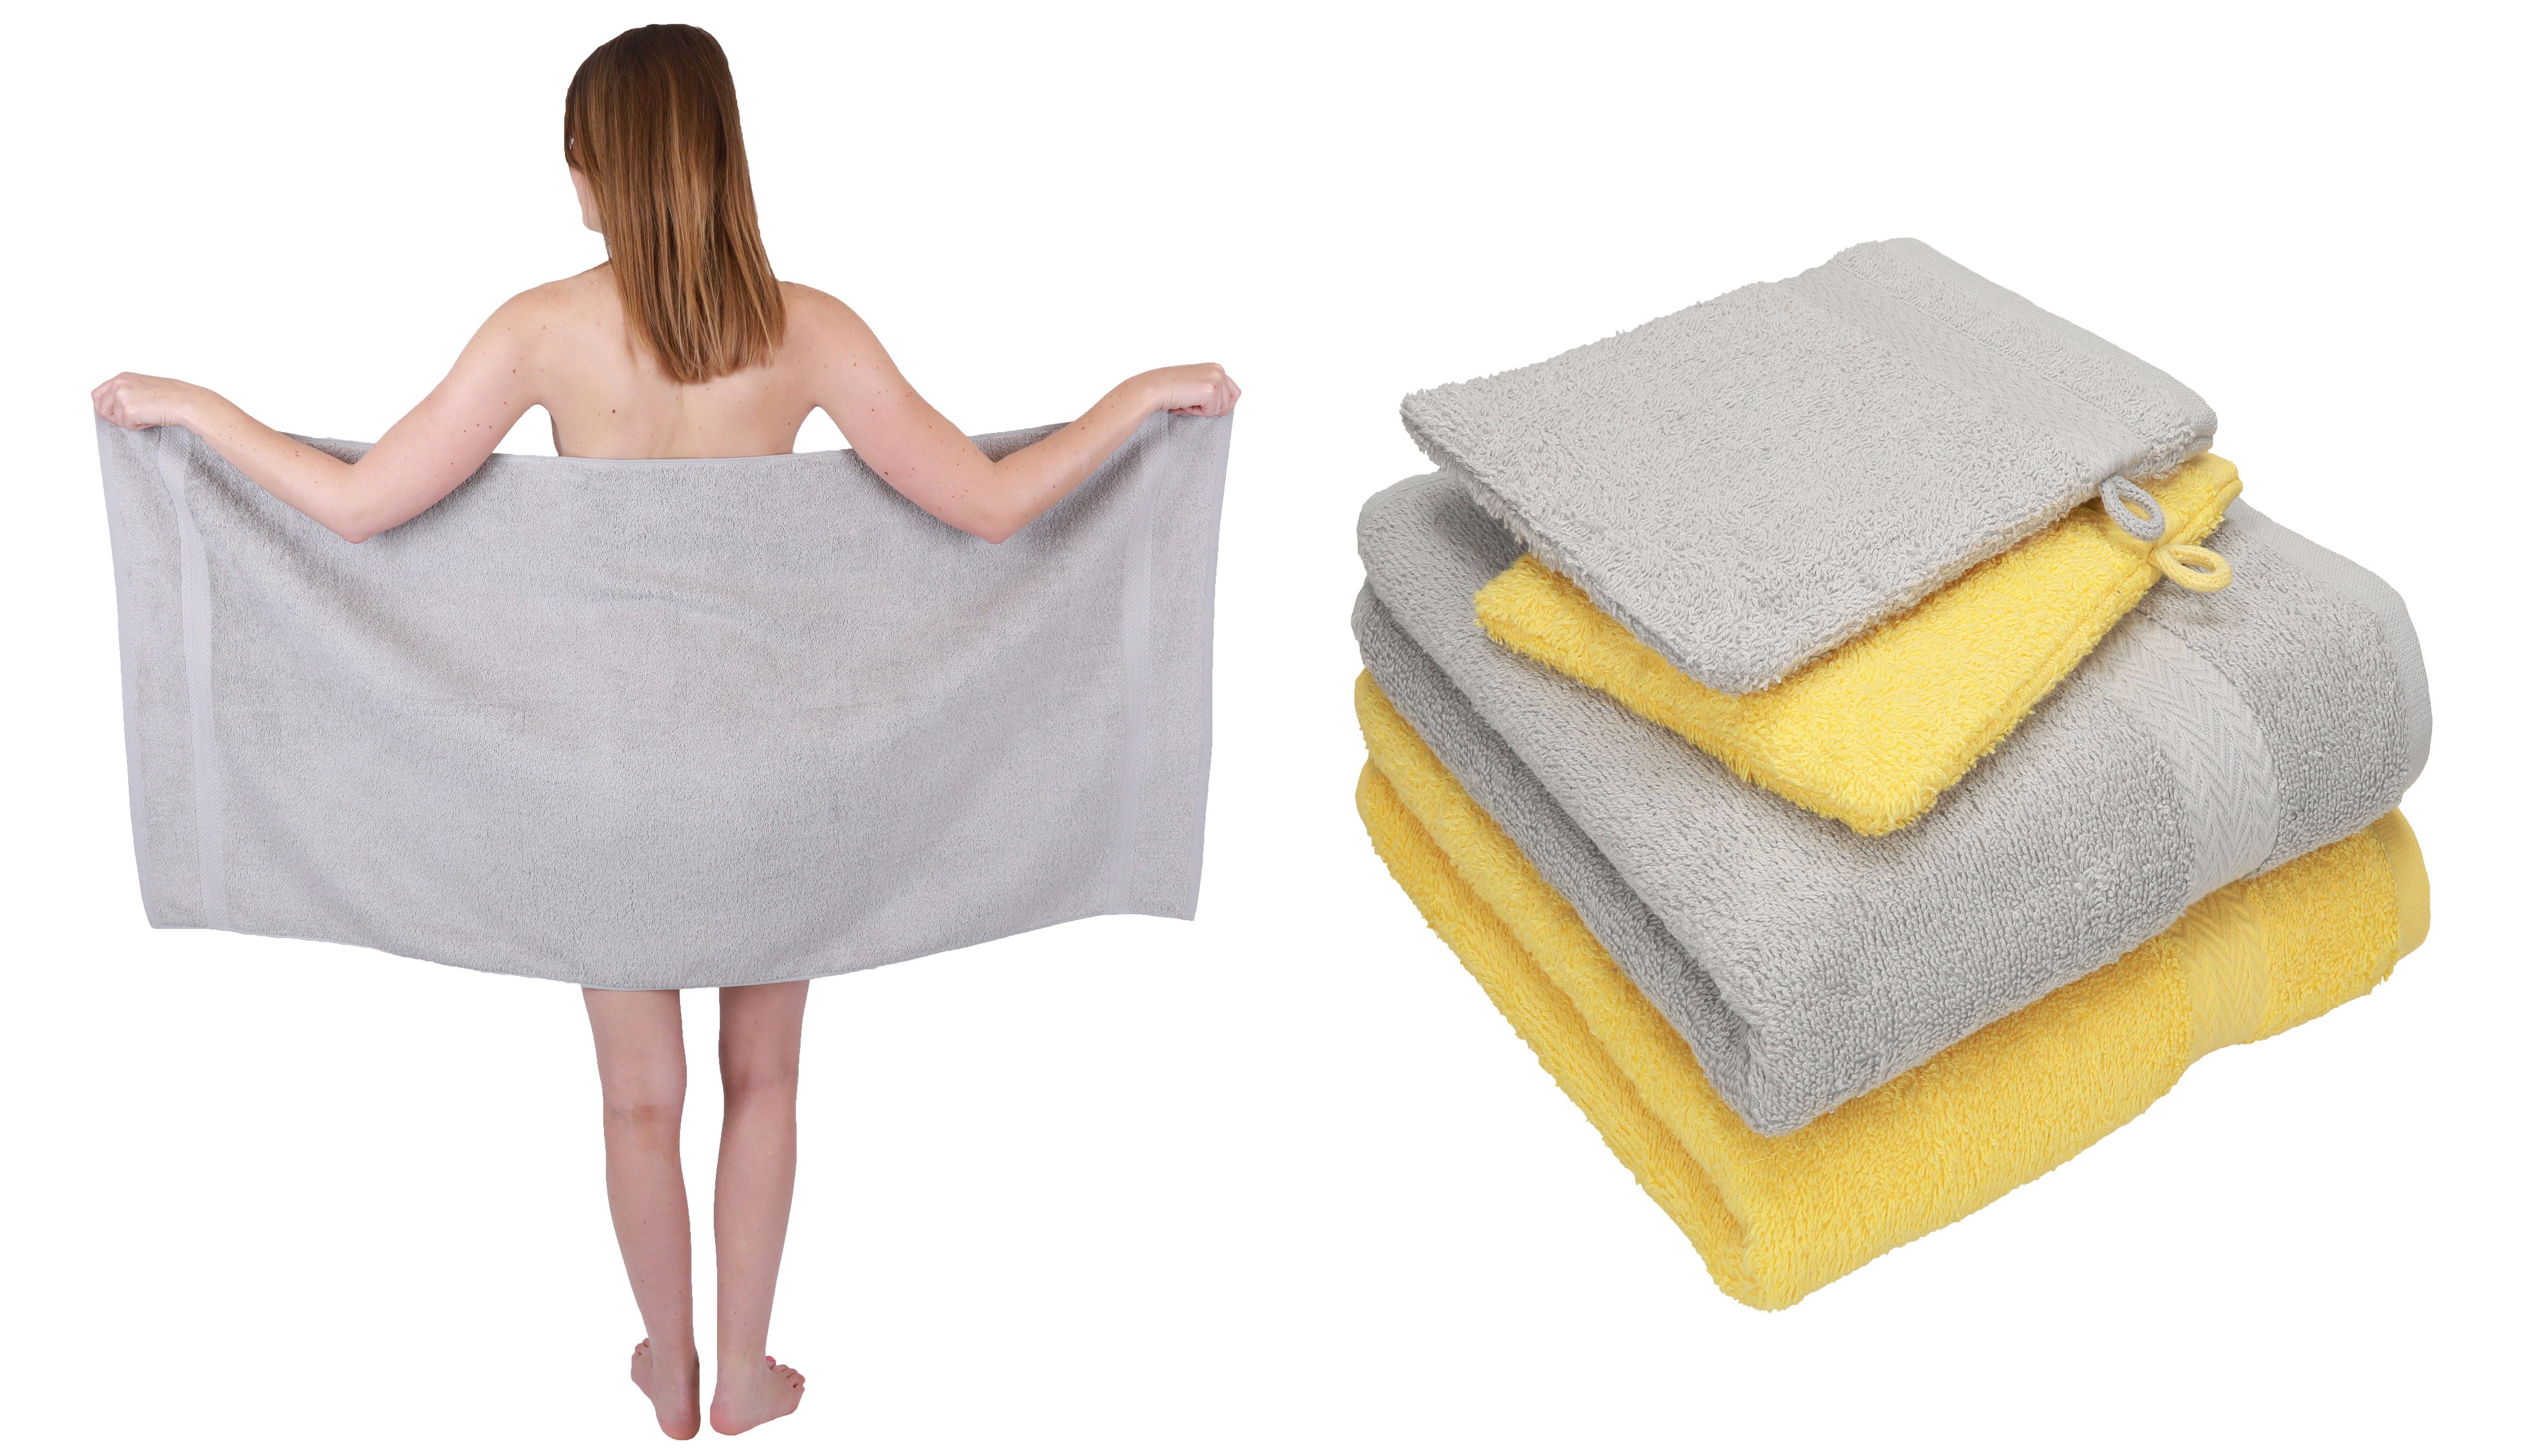 Betz Handtuch Set 5 TLG. Handtuch Set Single Pack 100% Baumwolle 1 Duschtuch 2 Handtücher 2 Waschhandschuhe, 100% Baumwolle silbergrau-gelb